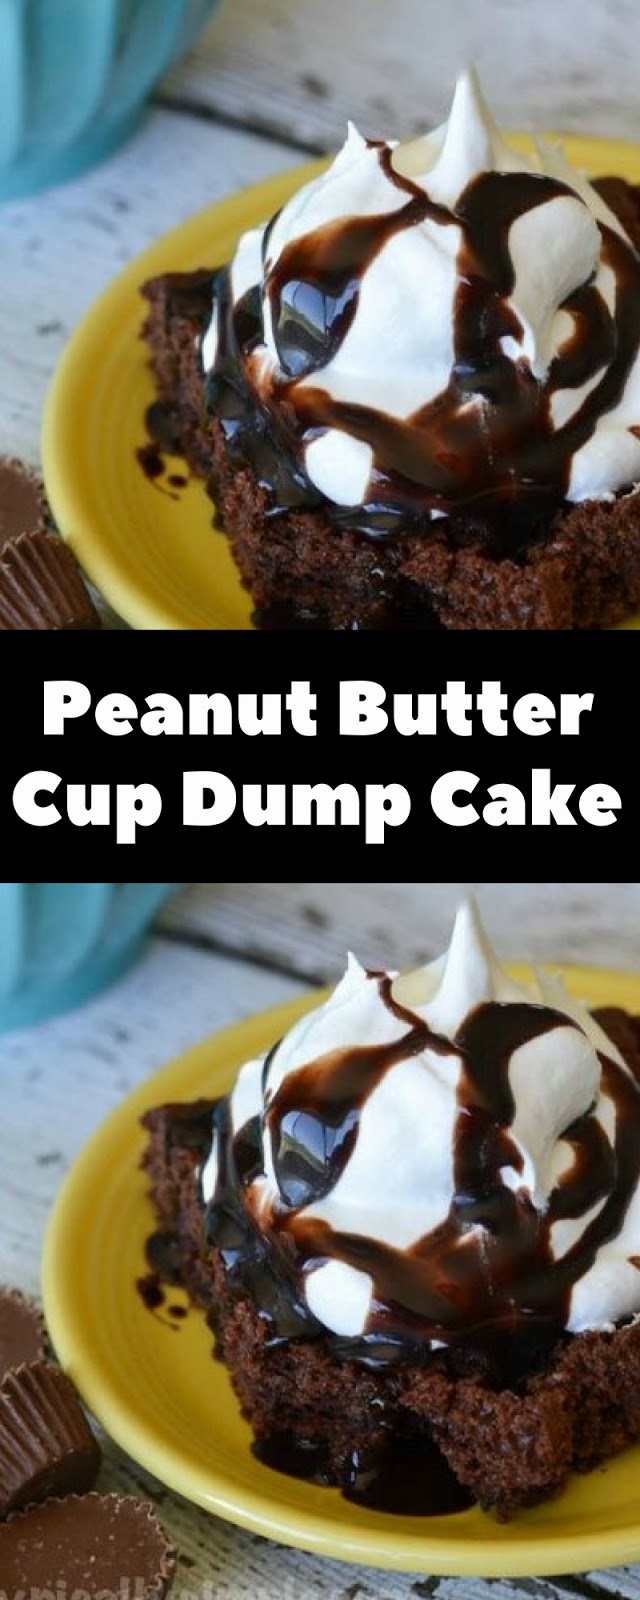 Peanut Butter Cup Dump Cake